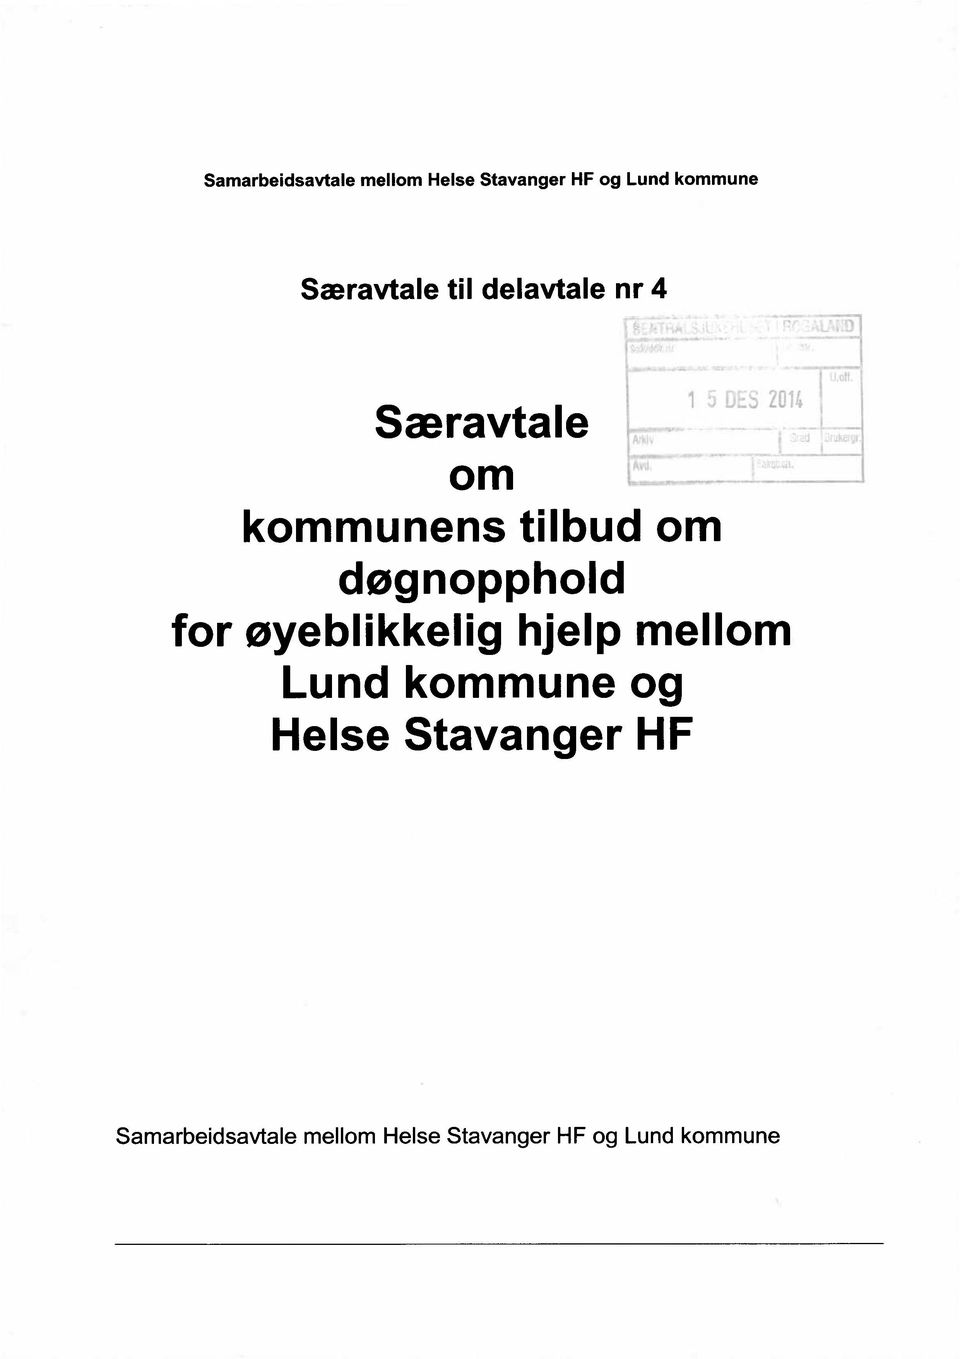 døgnopphold for øyeblikkelig hjelp mellom Lund kommune og Helse